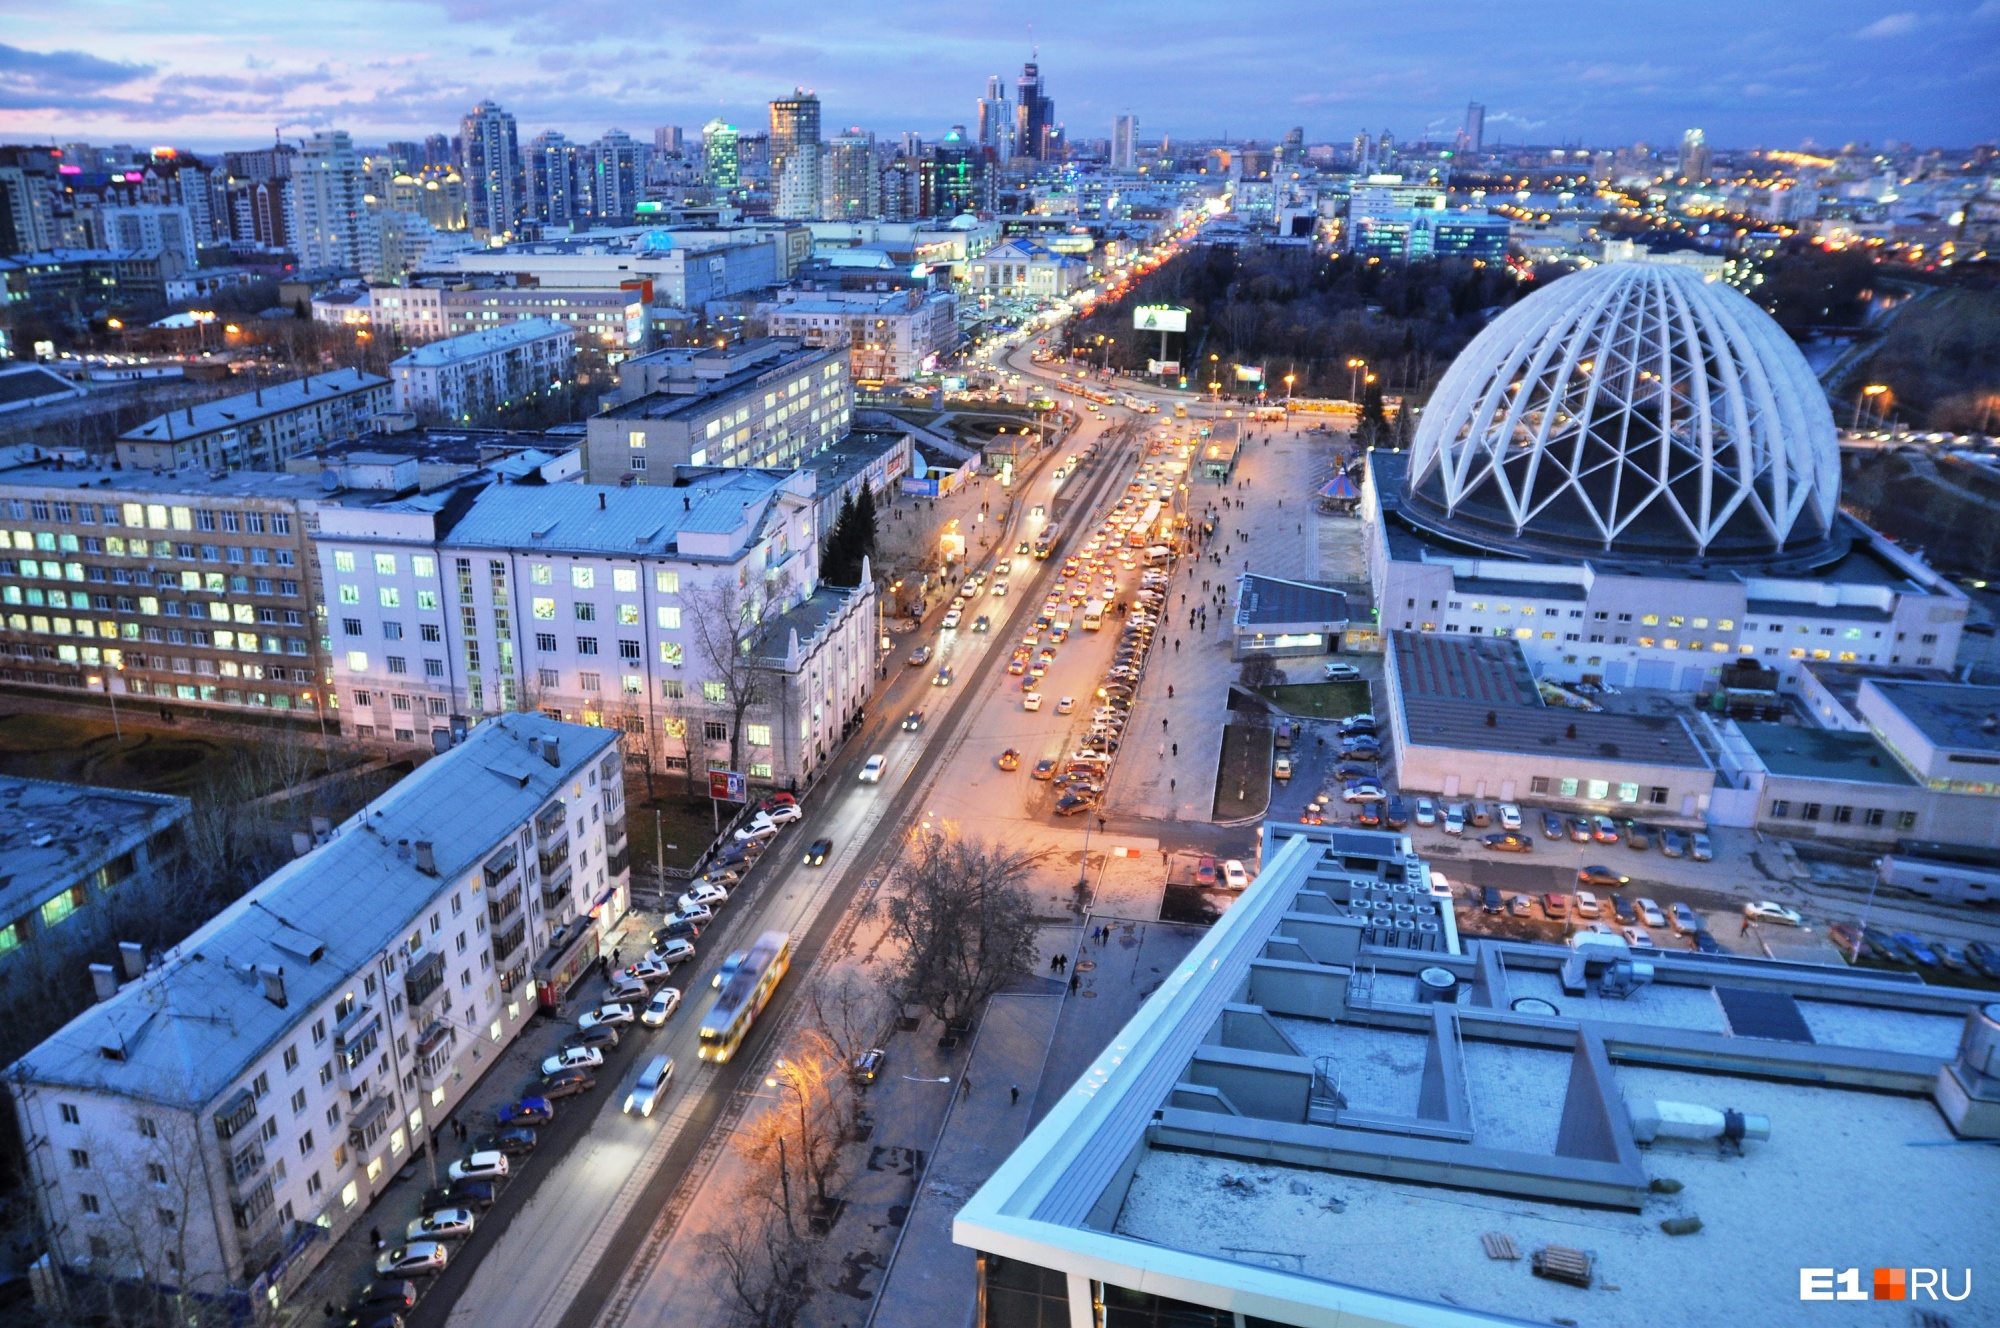 Получить разрешение на стройку станет проще: в Екатеринбурге добились отмены согласования облика зданий